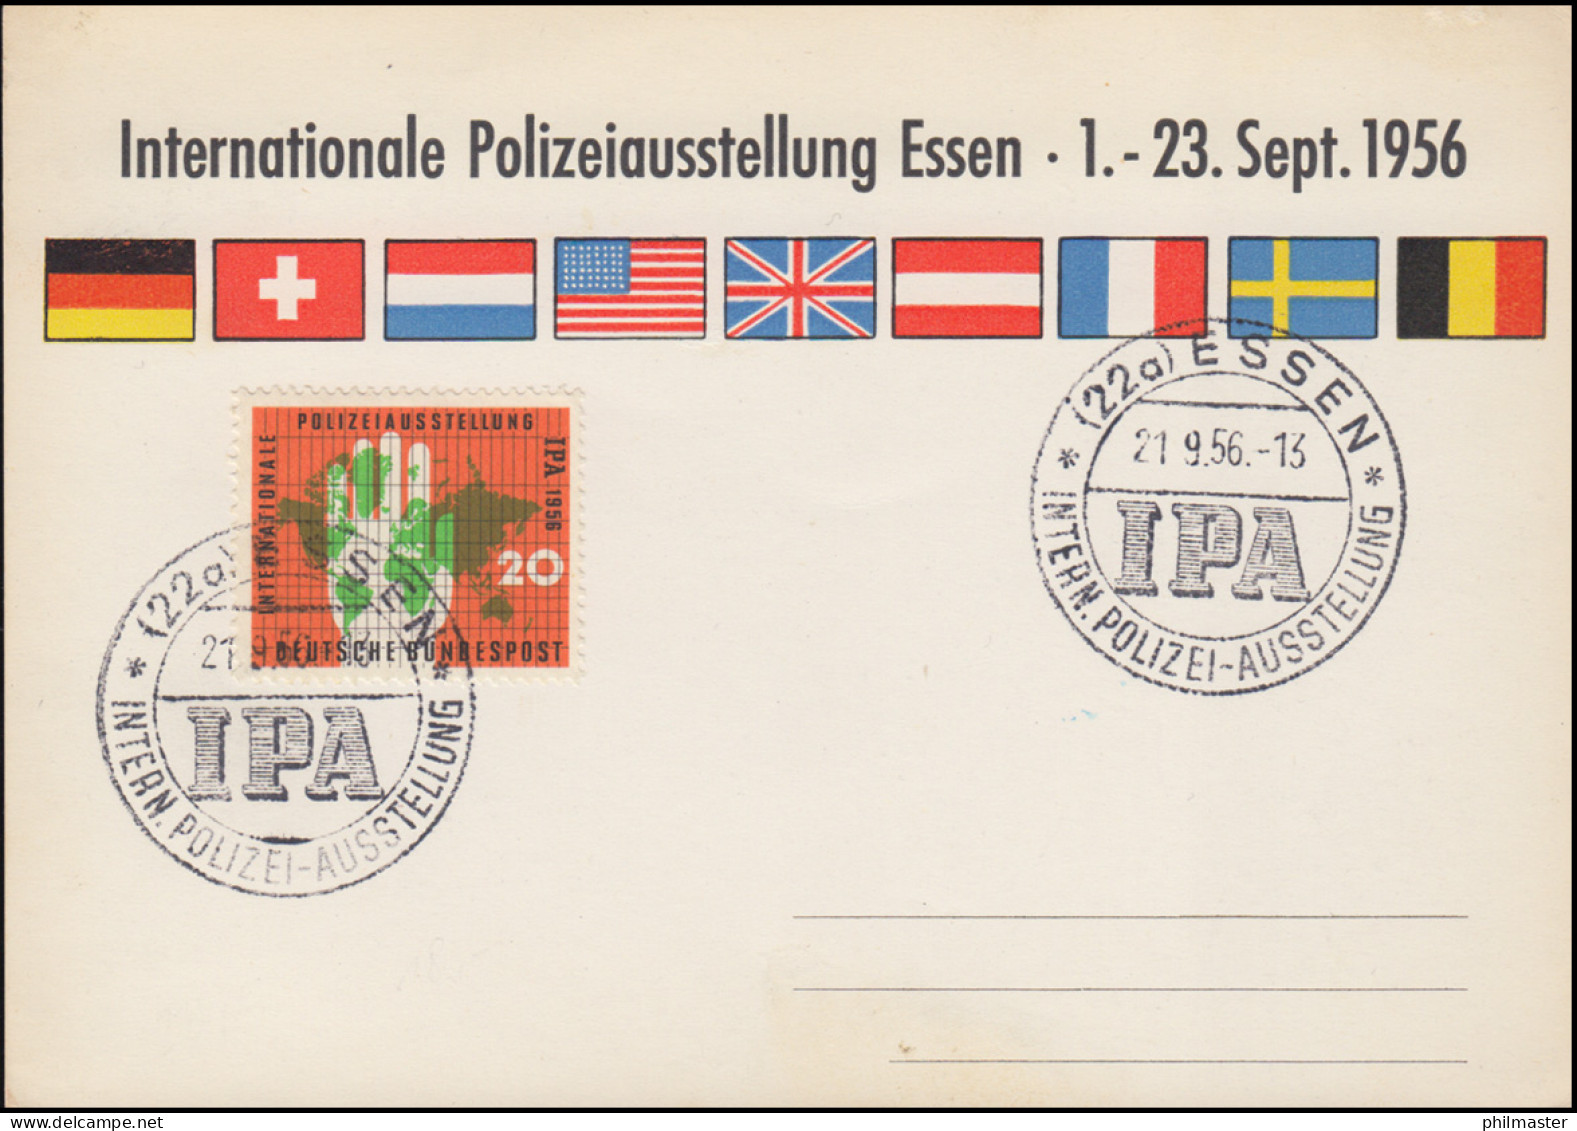 Sonder-Karte 240 Internationale Polizeiausstellung Essen 1956, SSt IPA 21.9.56 - Polizei - Gendarmerie